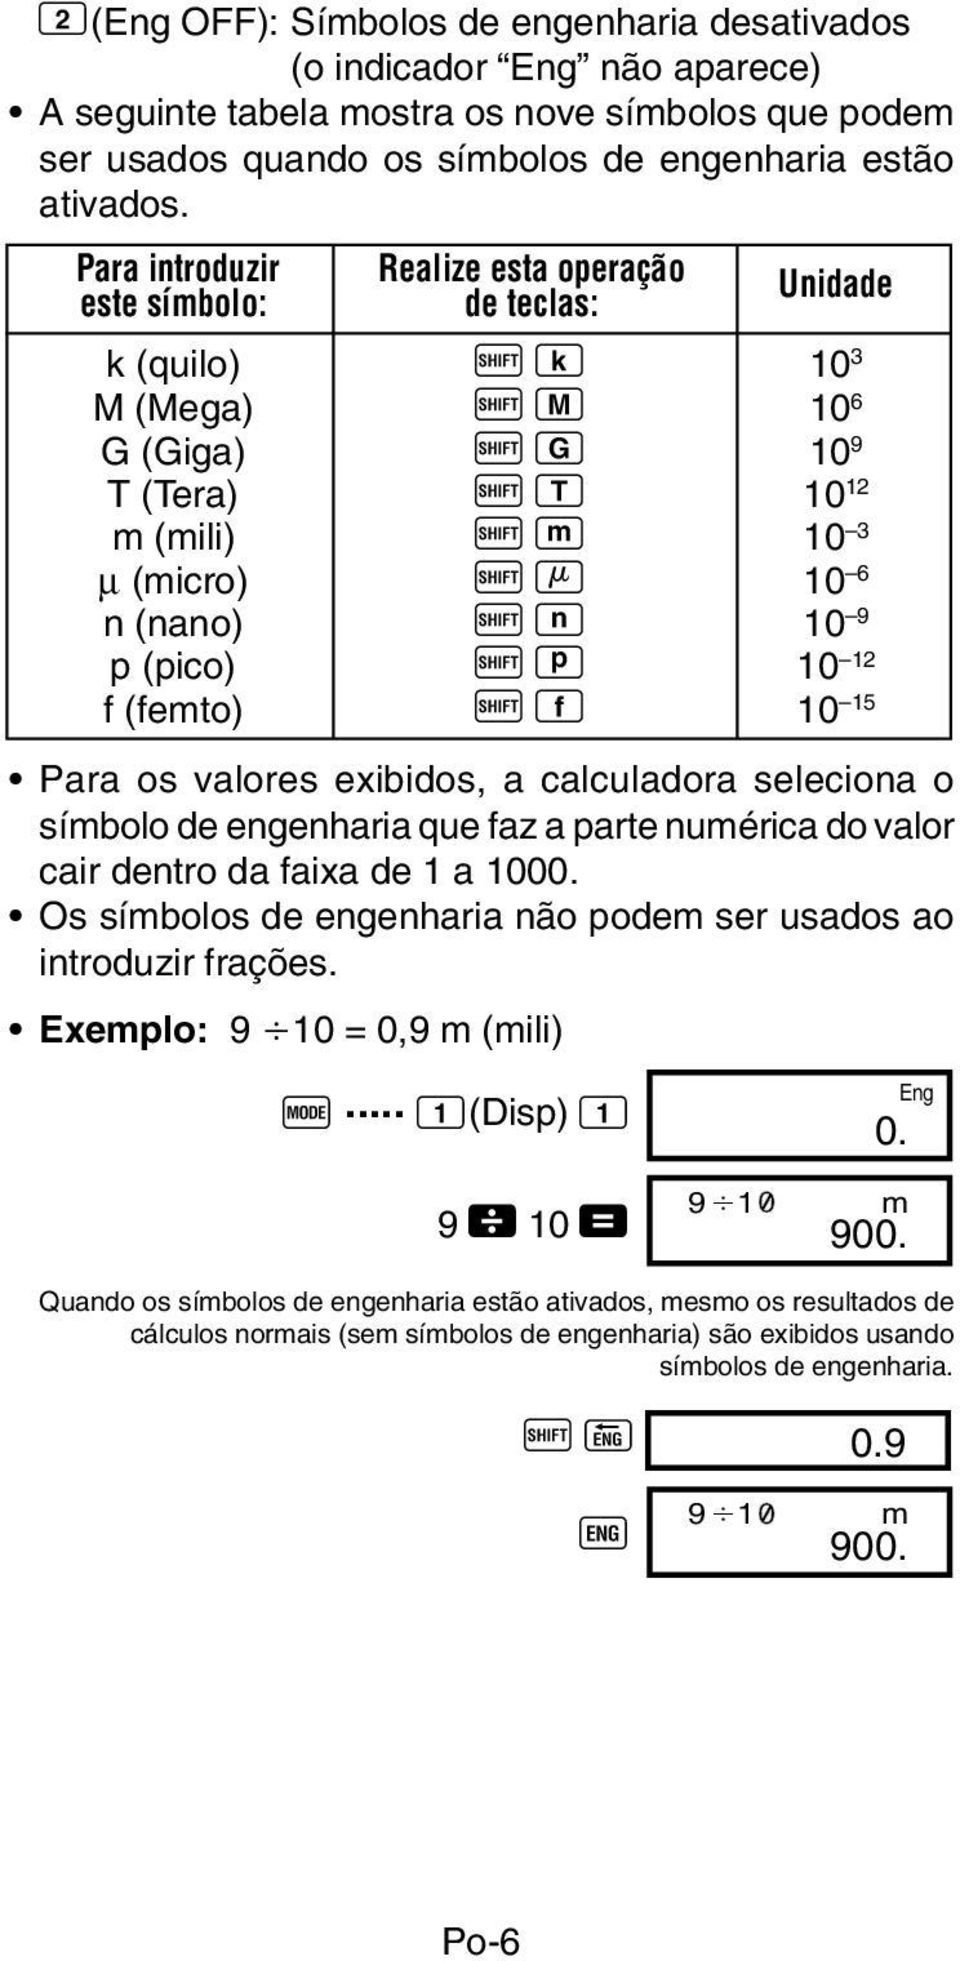 p (pico) A p 10 12 f (femto) A f 10 15 Para os valores exibidos, a calculadora seleciona o símbolo de engenharia que faz a parte numérica do valor cair dentro da faixa de 1 a 1000.